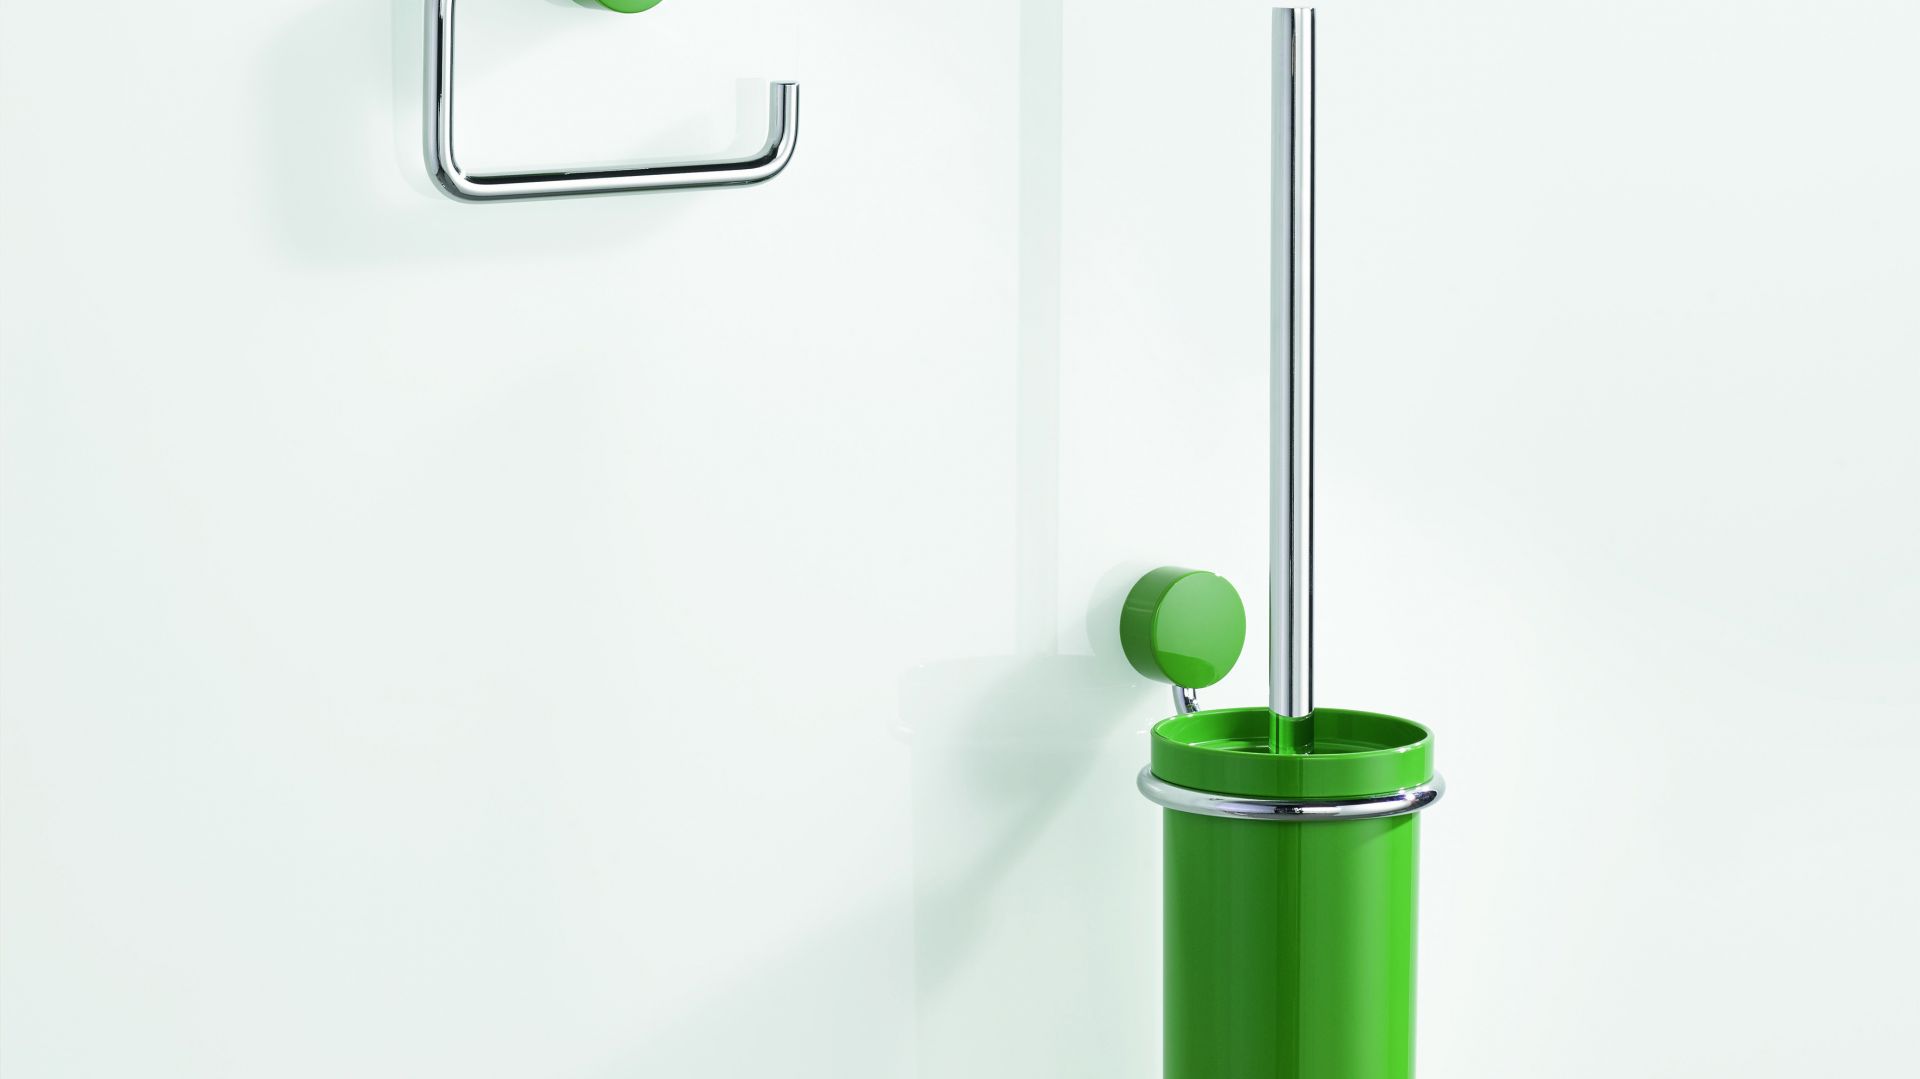 Akcesoria łazienkowe: nowa, elegancka seria w rozmaitych kolorach